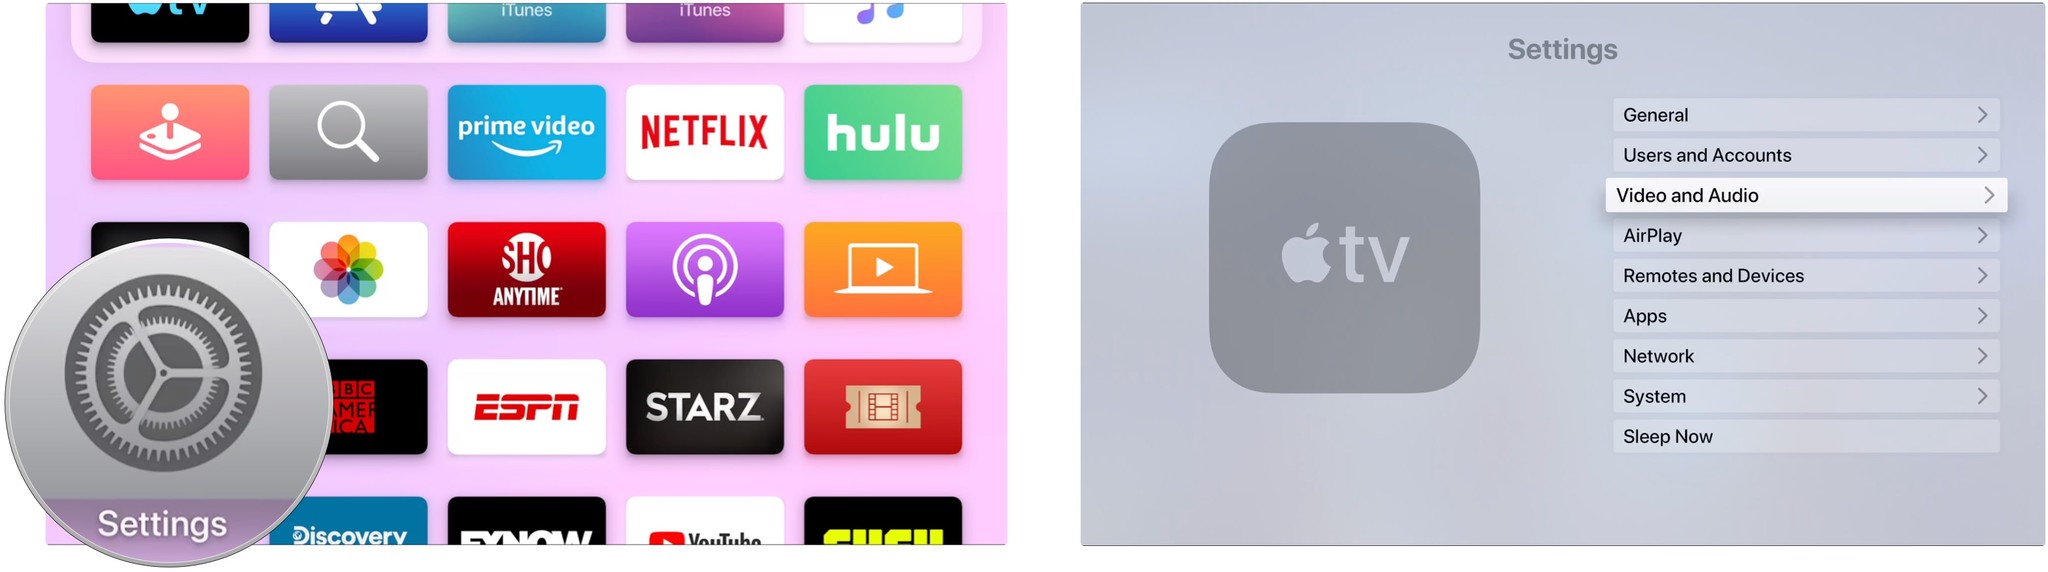 Видео и аудио Apple TV